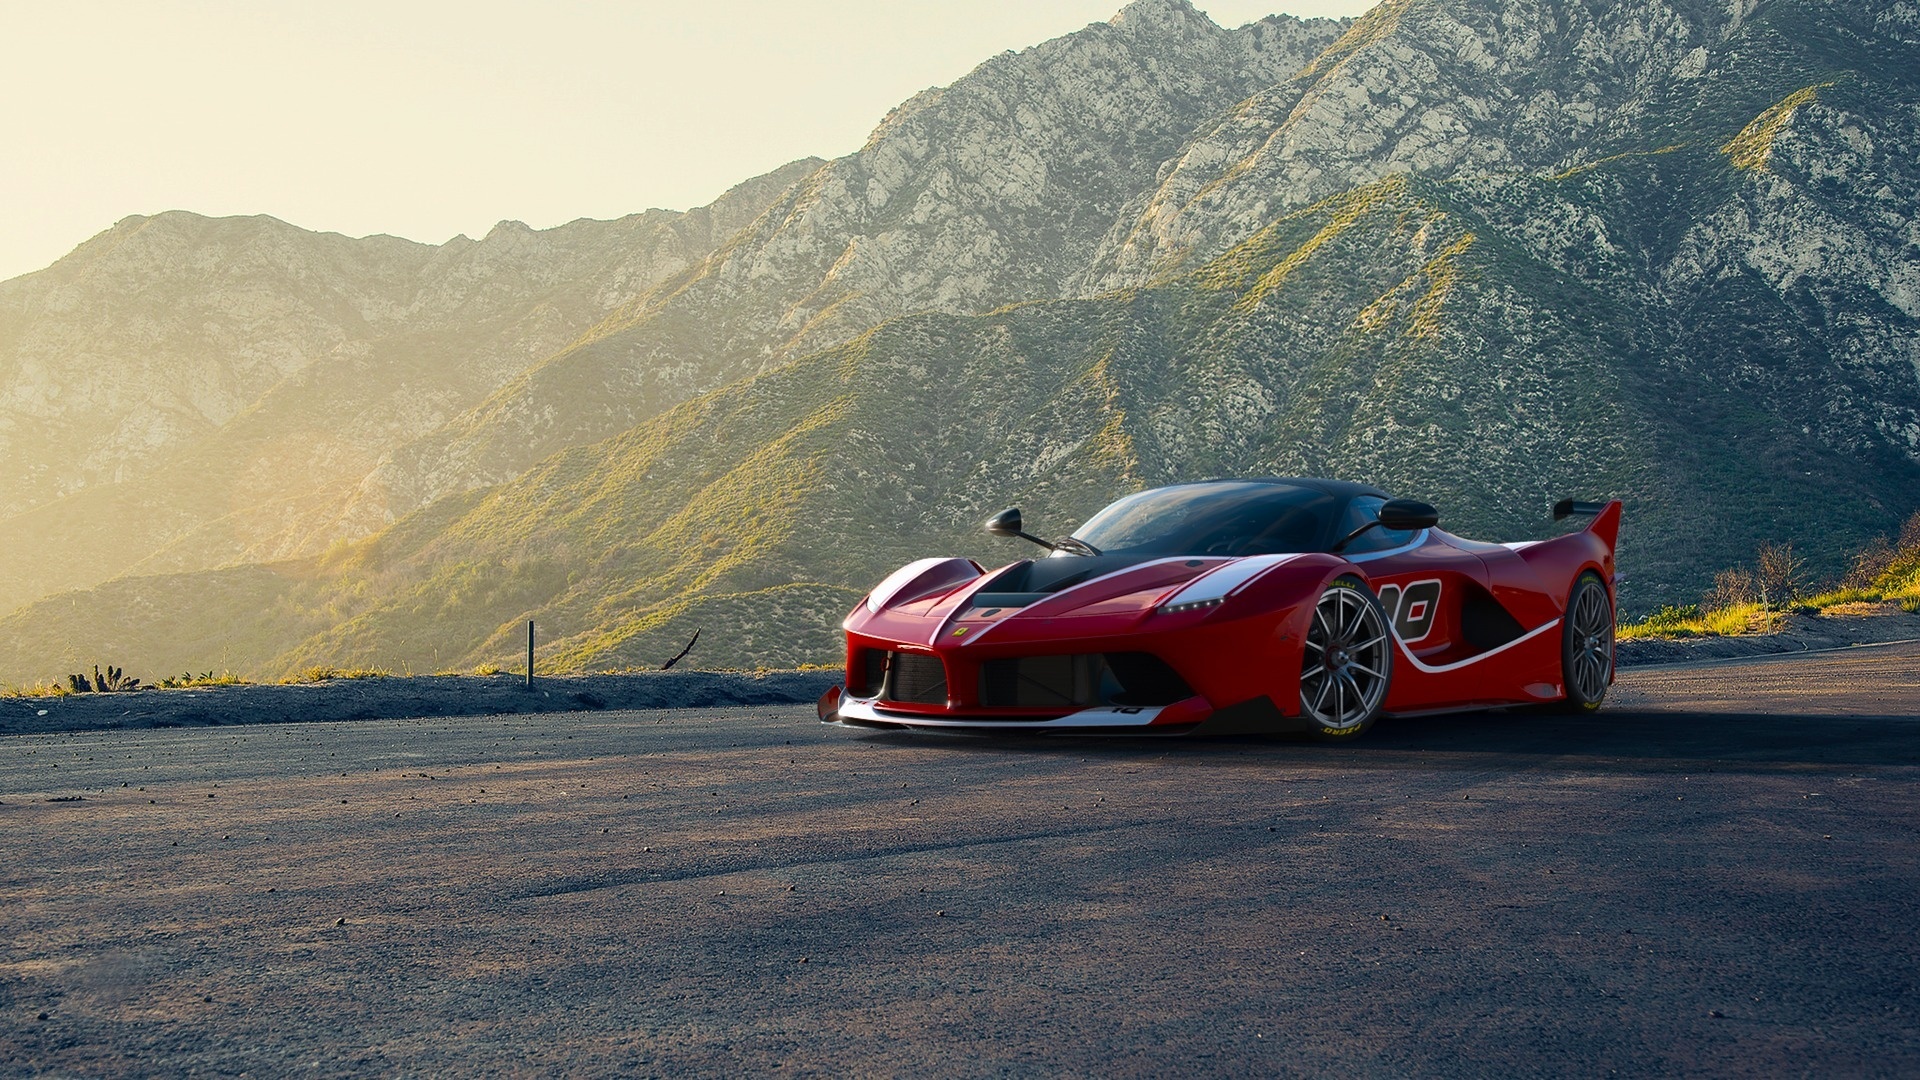 Ferrari, Supercar, Sports car, Red, Mountains Wallpaper ...